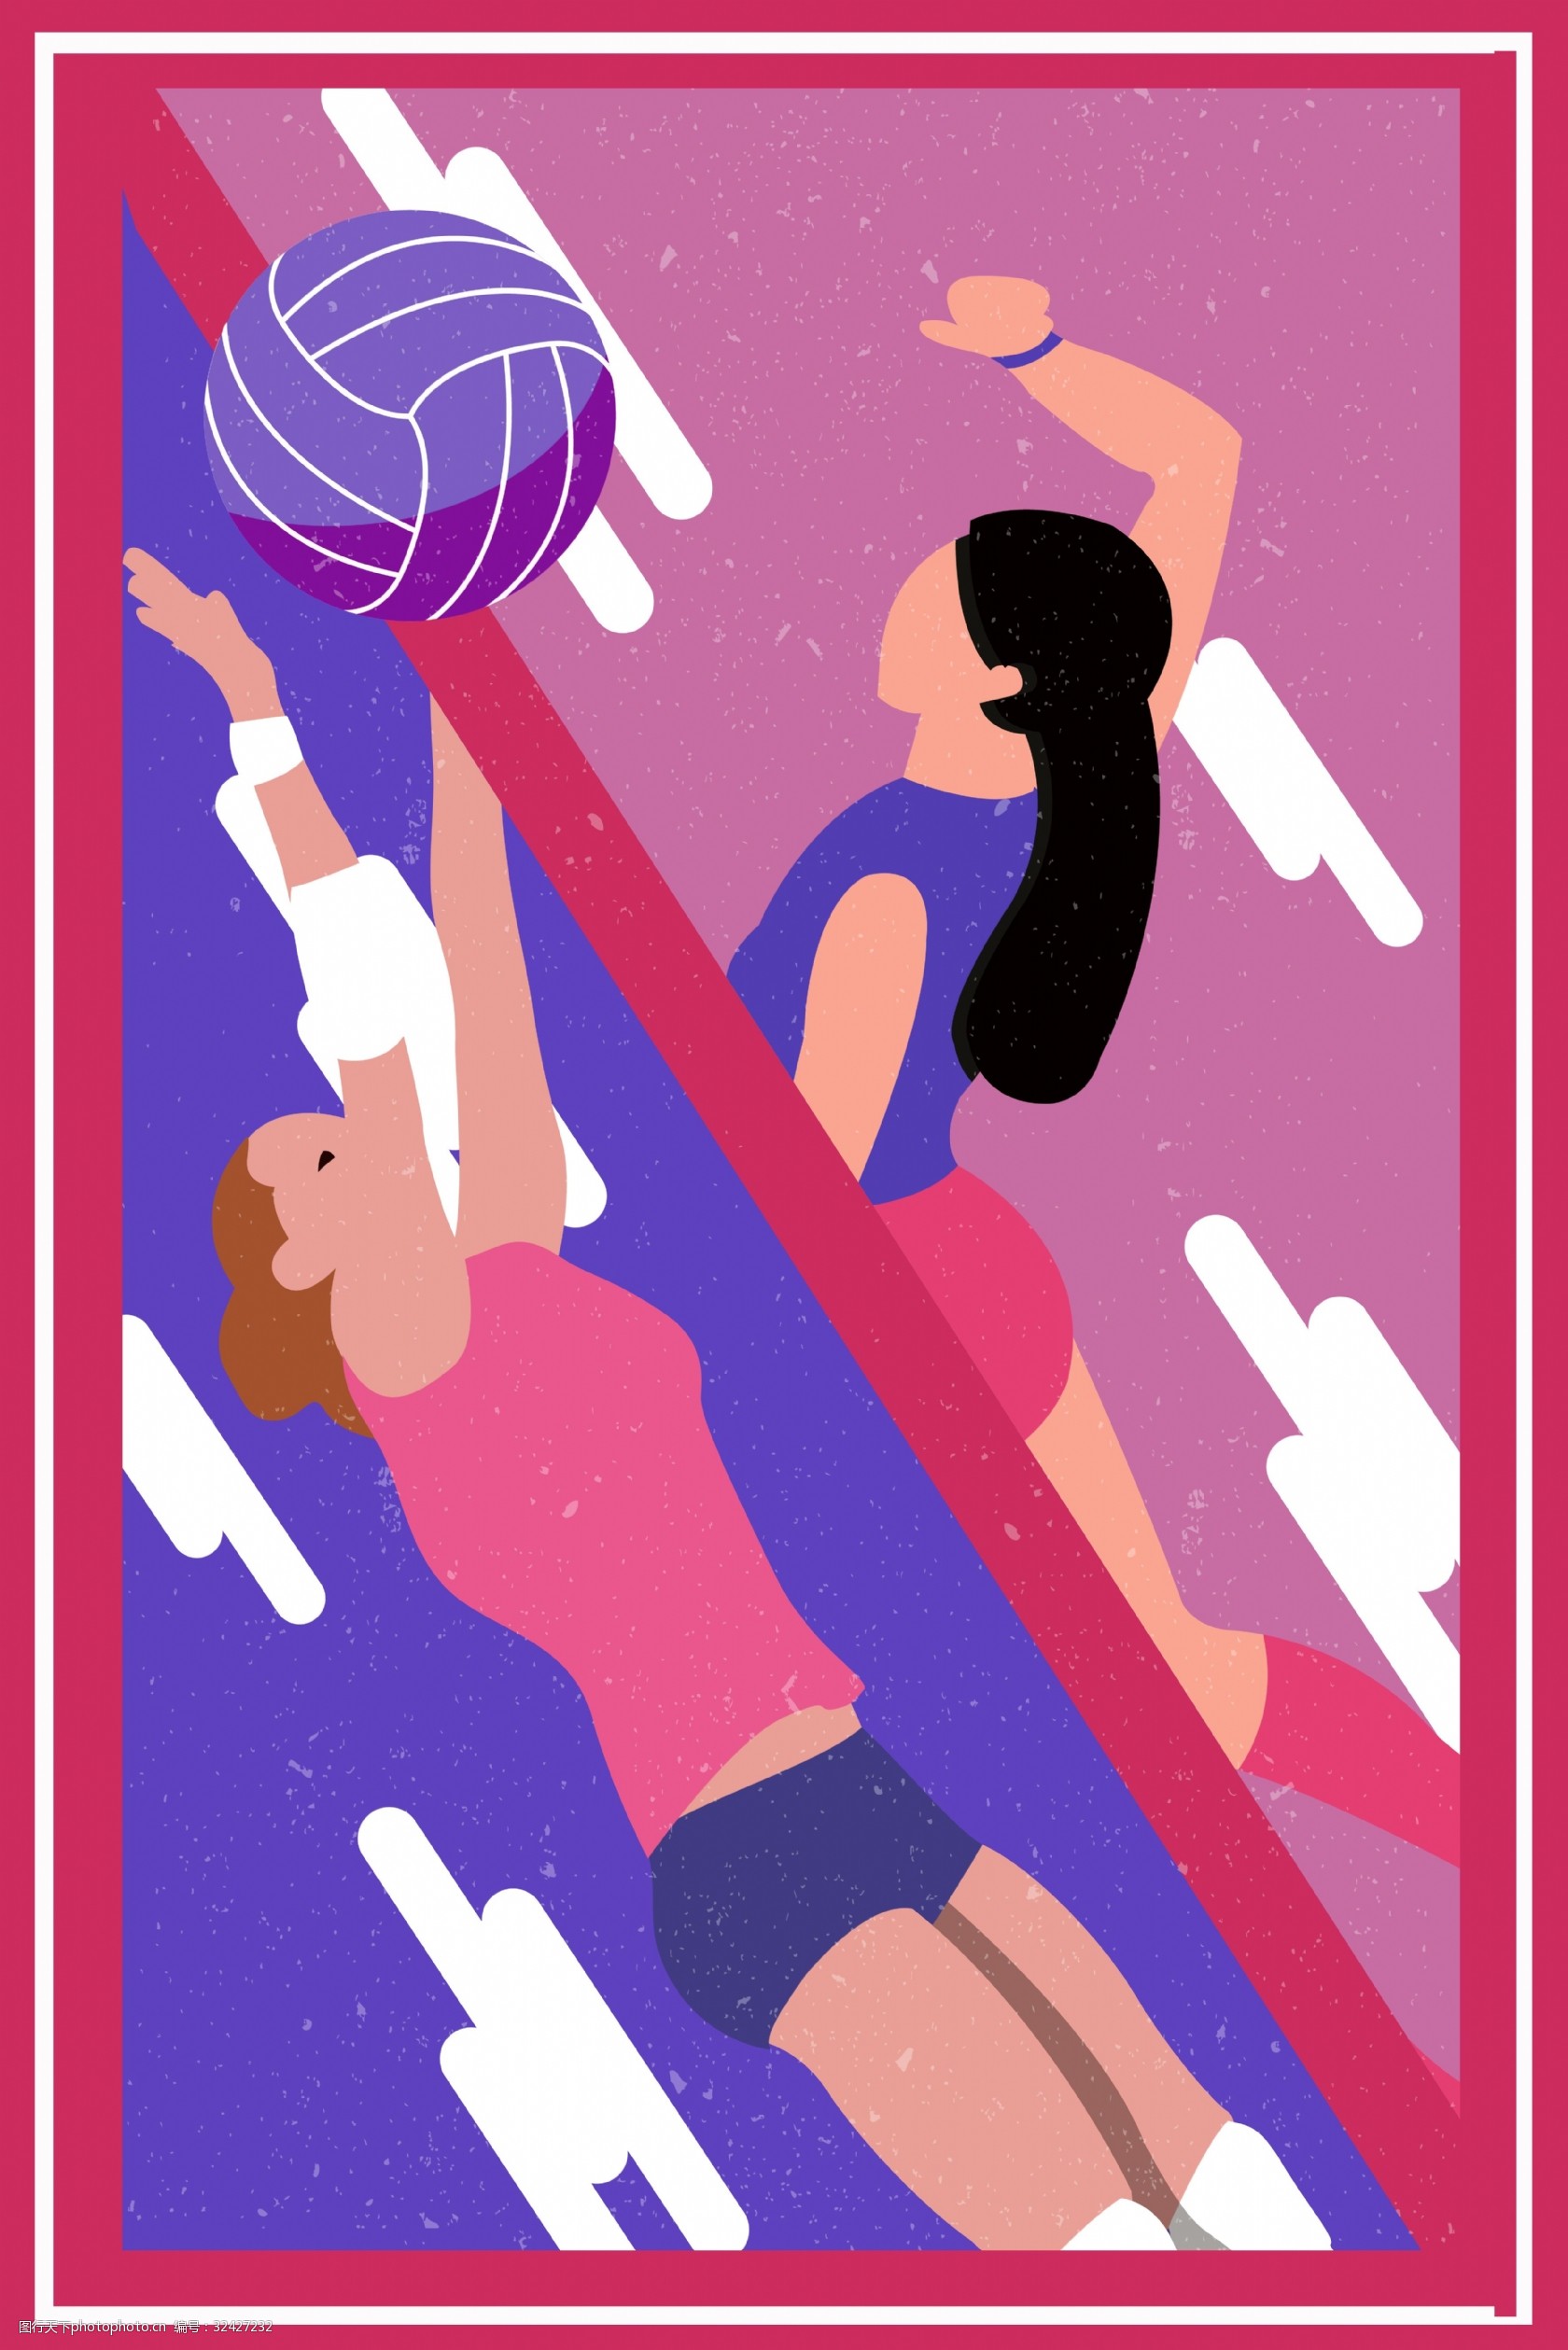 排球社团海报手绘图片